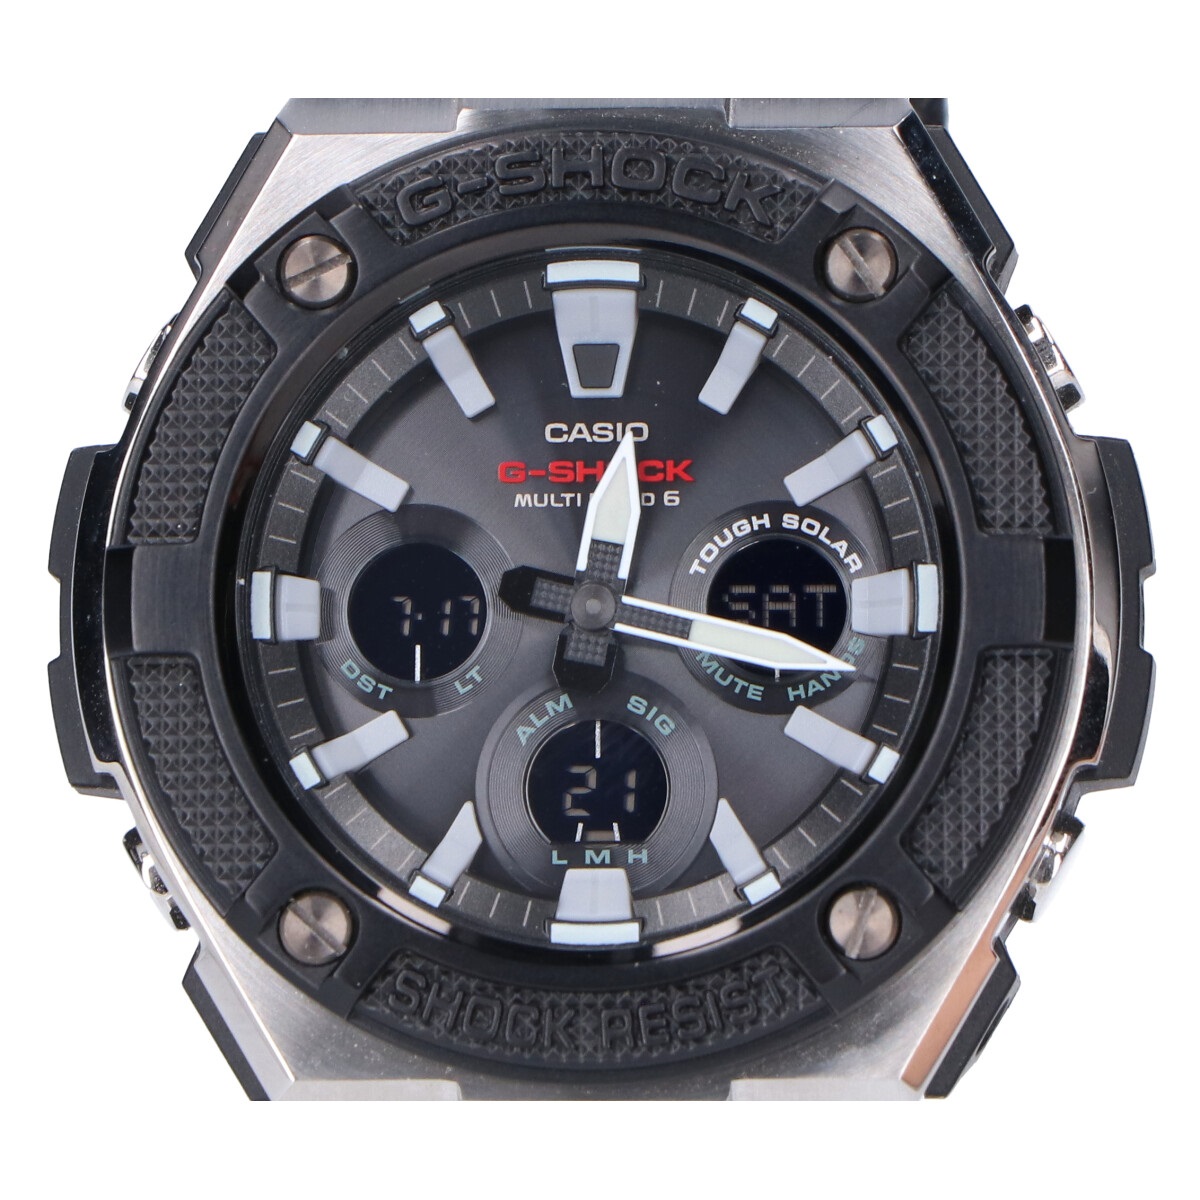 ジーショックのGST-W330AC-1AJF マルチバンド6 タフソーラー電波 腕時計の買取実績です。